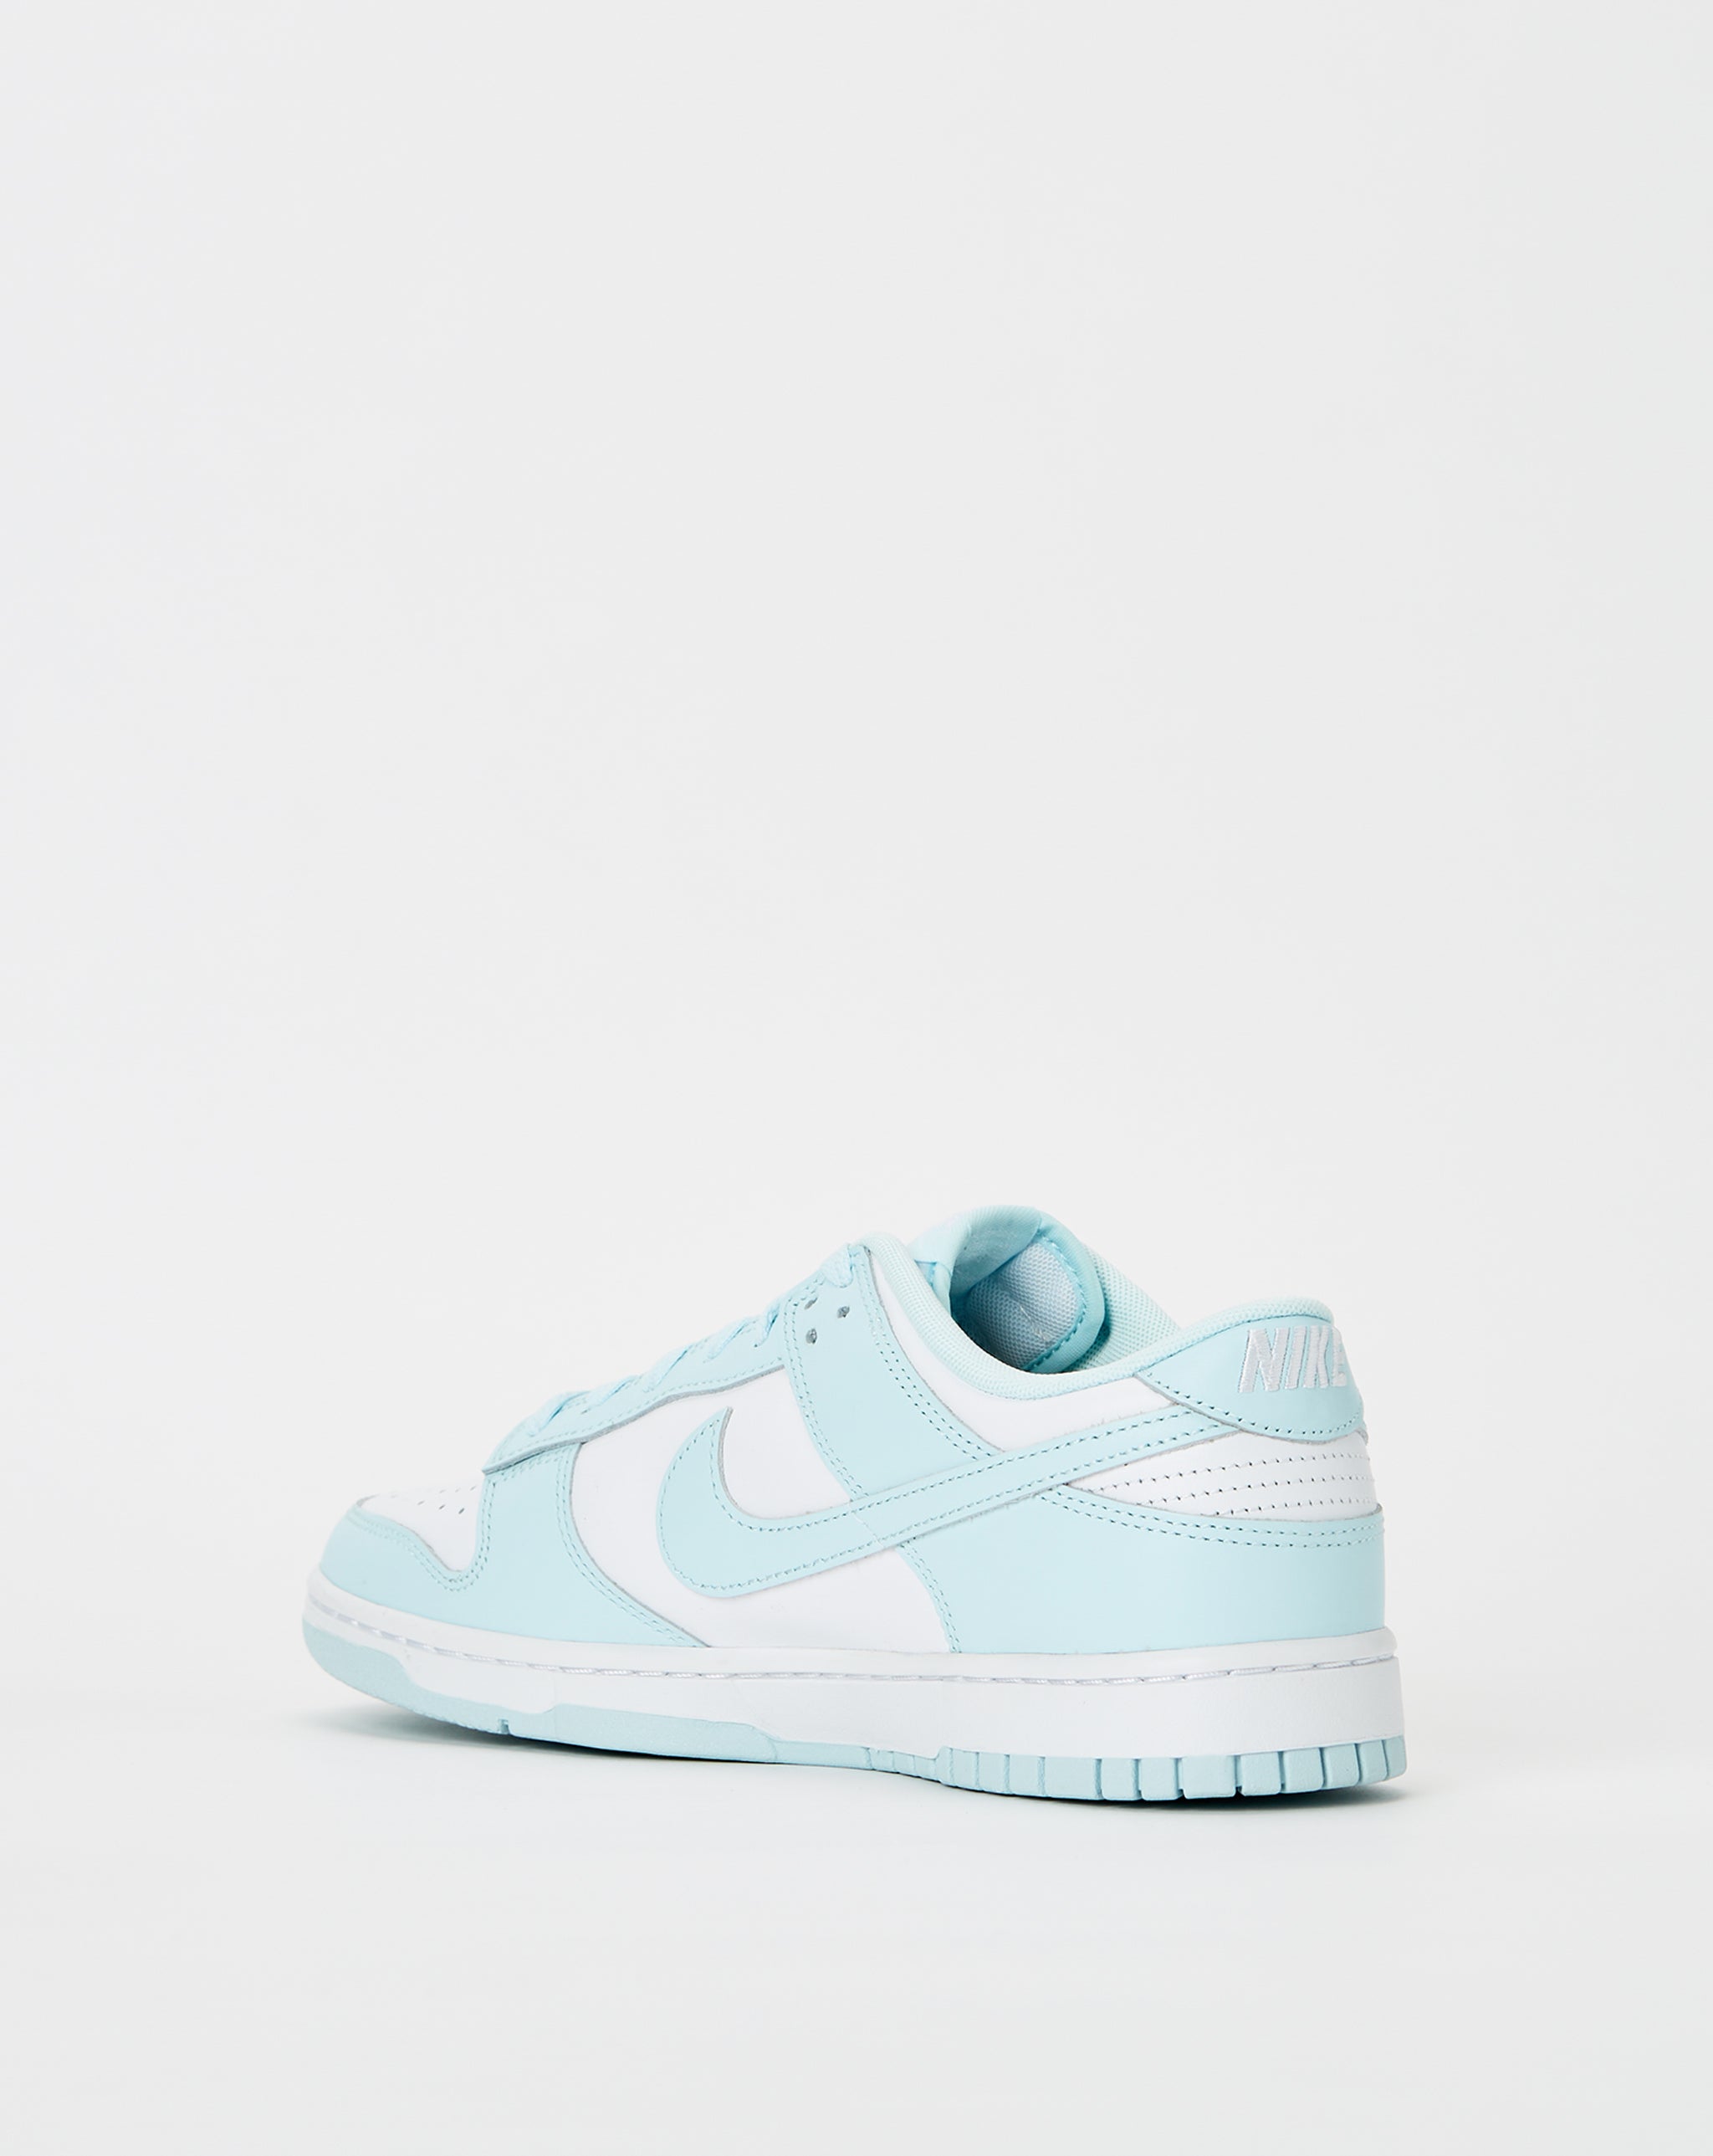 Nike Dunk Low Retro 'Glacier Blue'  - Cheap Urlfreeze Jordan outlet